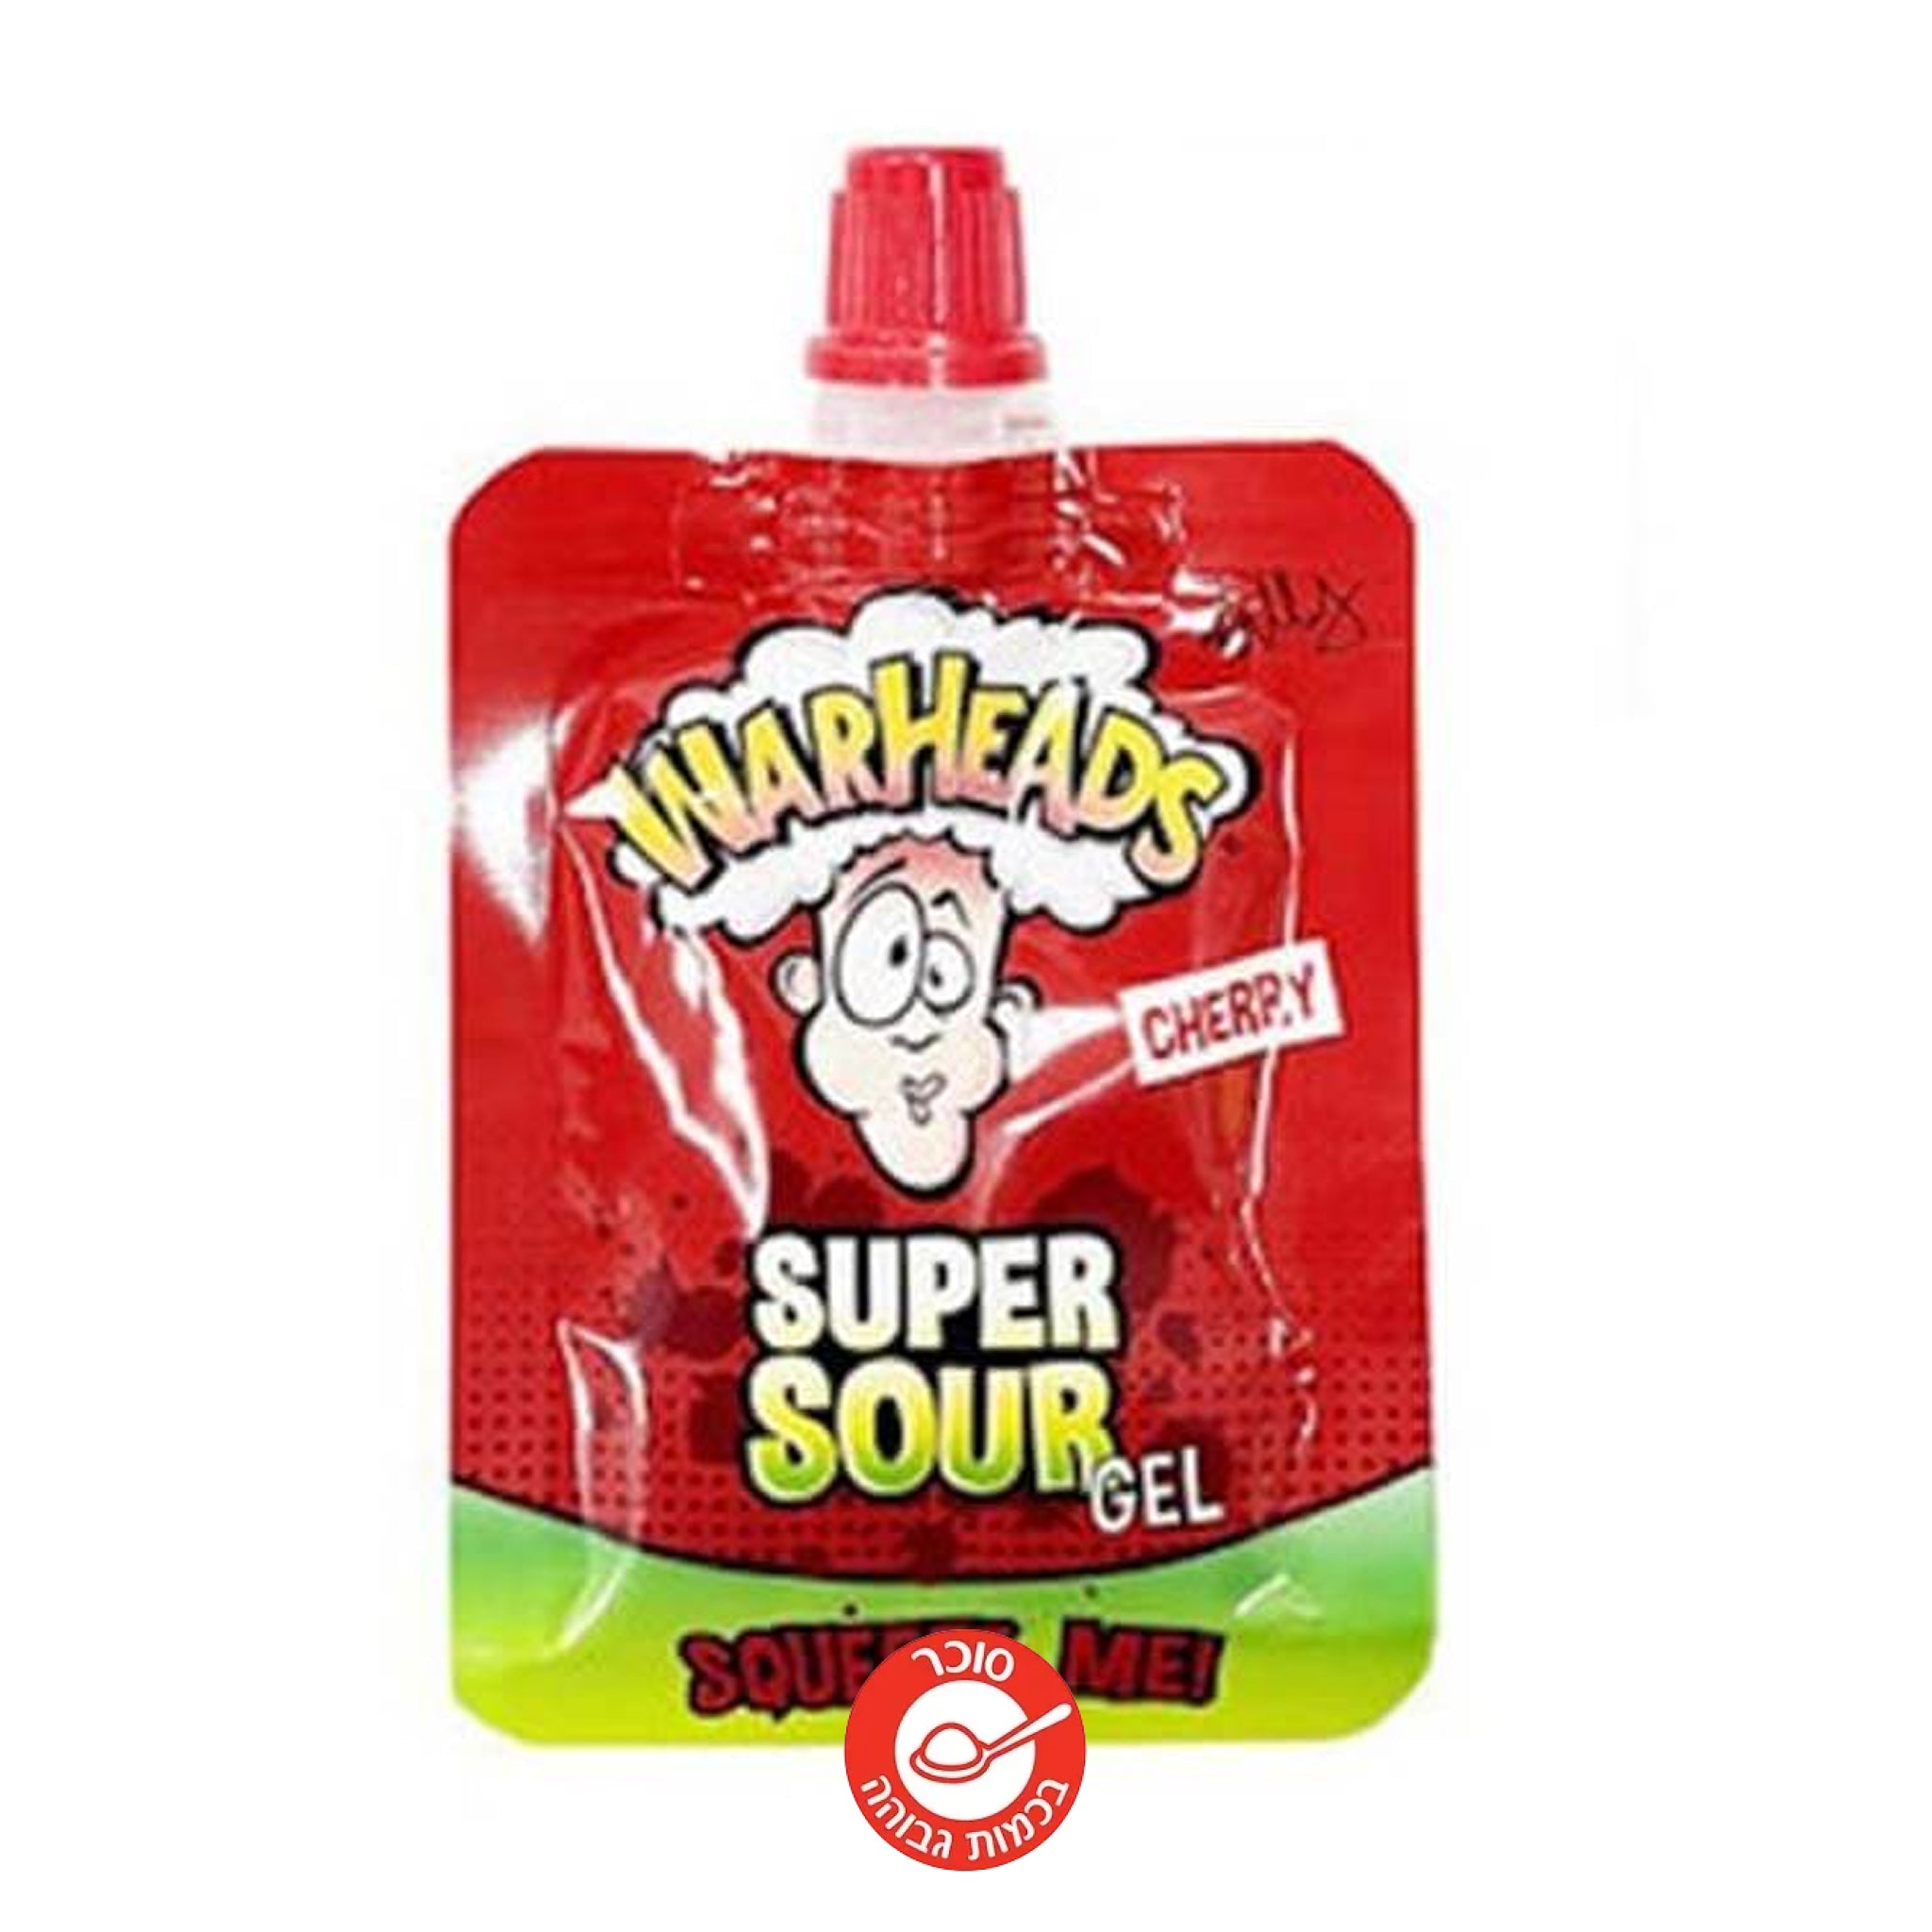 Warheads Super Sour Gel Cherry וורהאדס ג'ל סופר חמוץ בטעם דובדבן